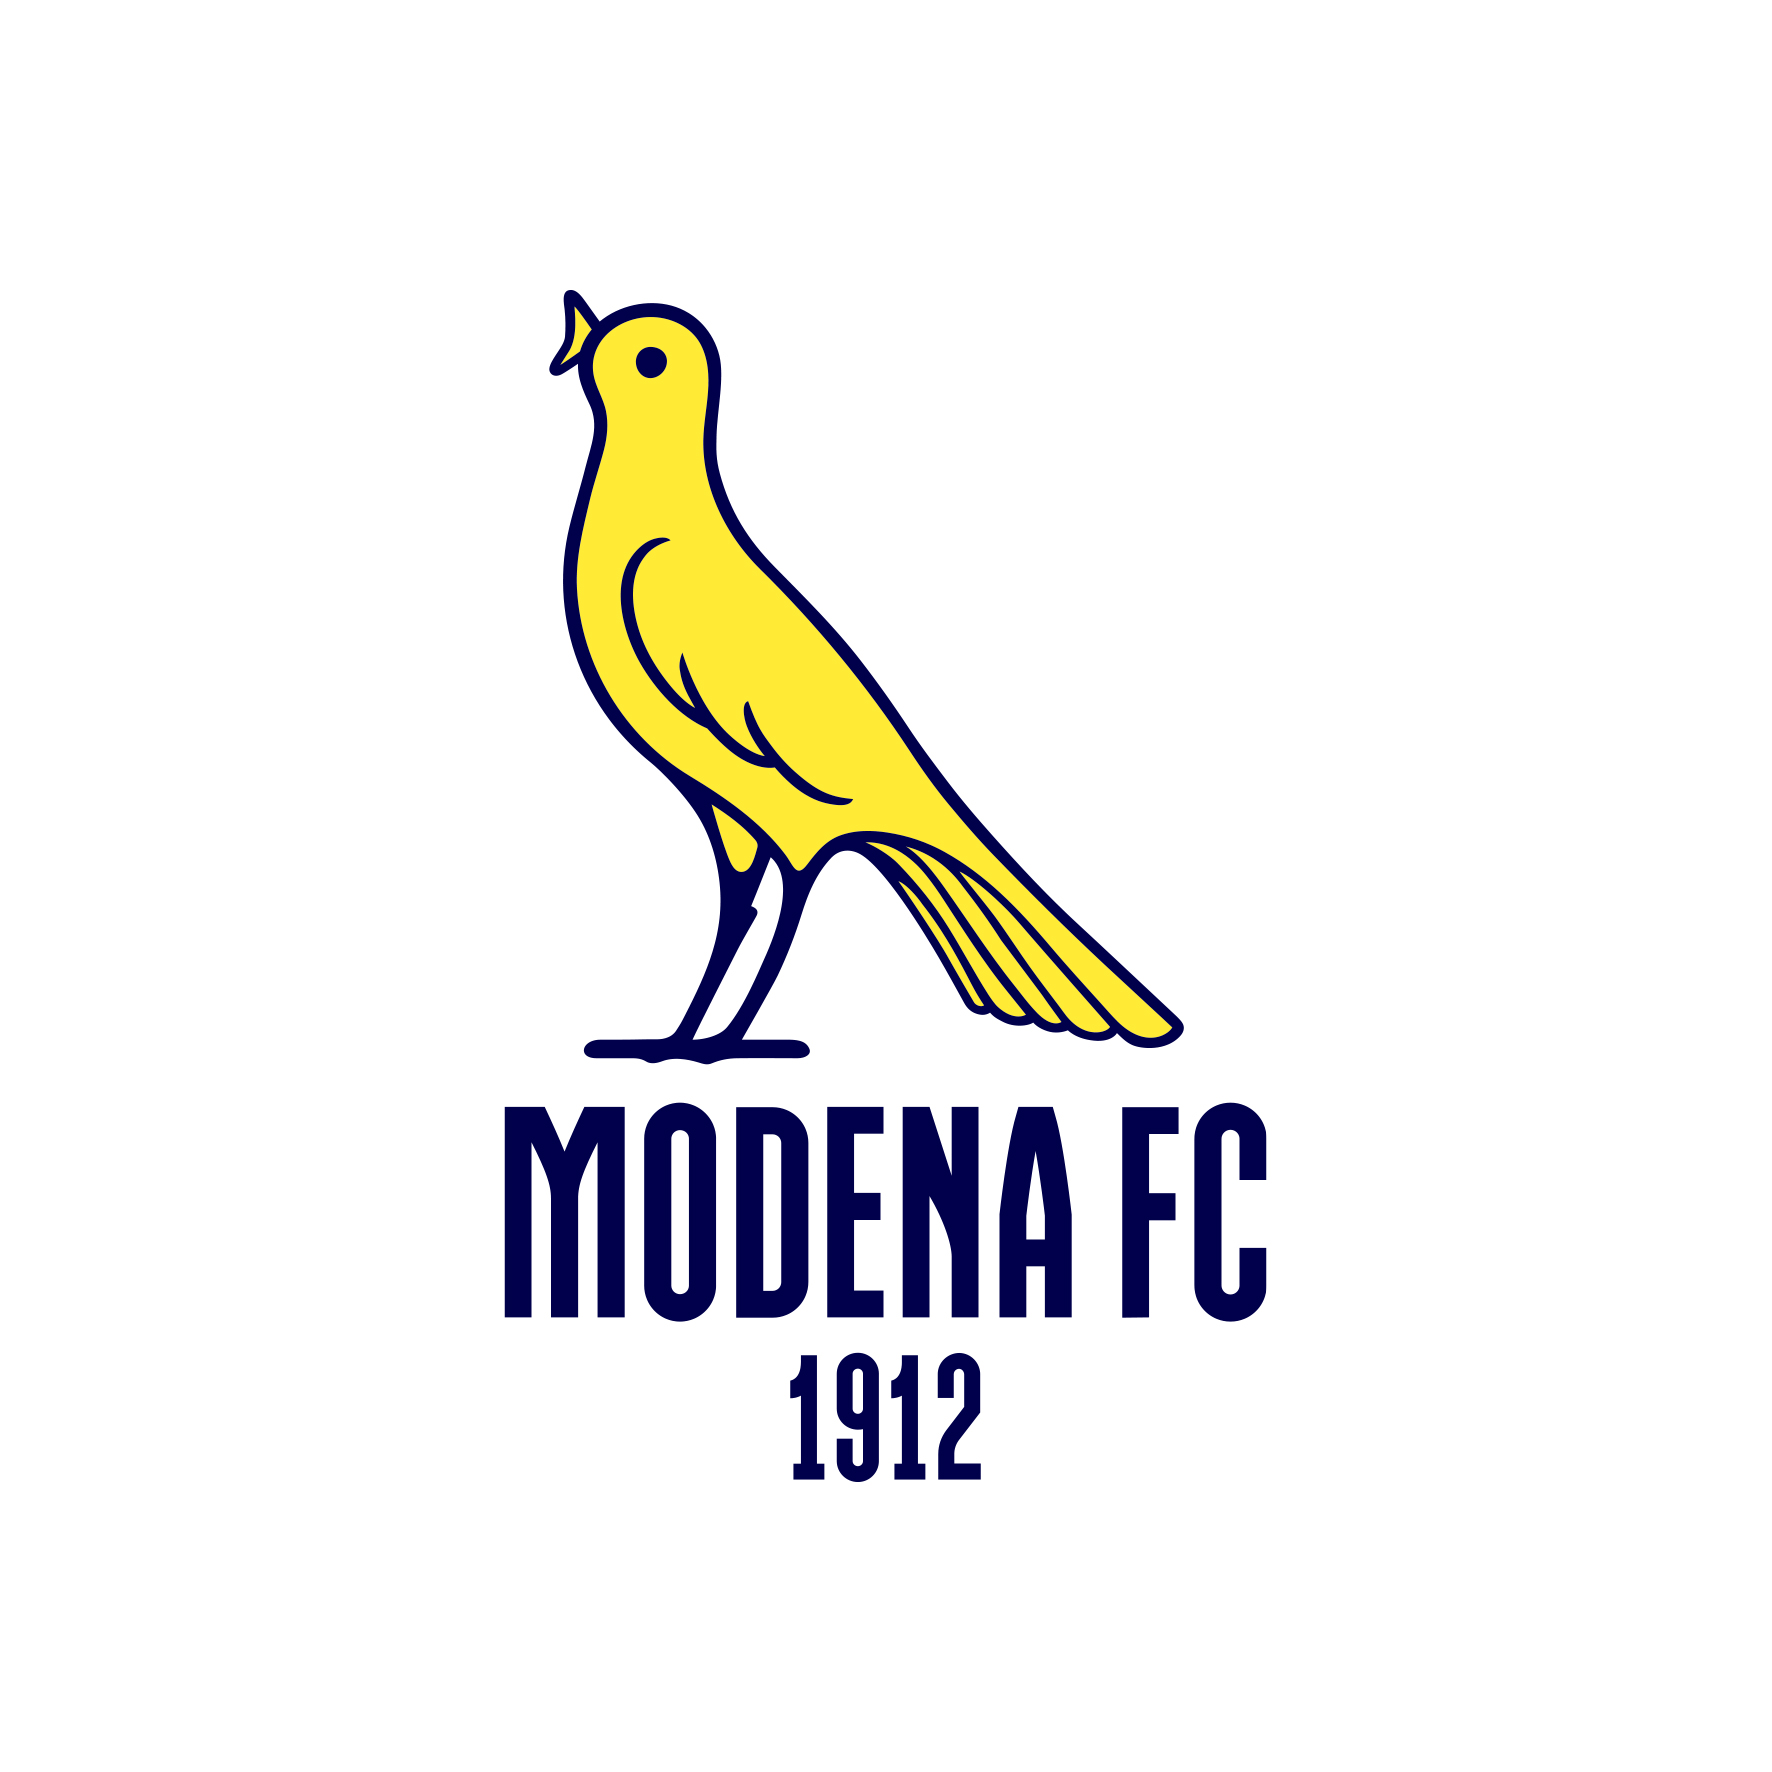 Modena FC - Club profile